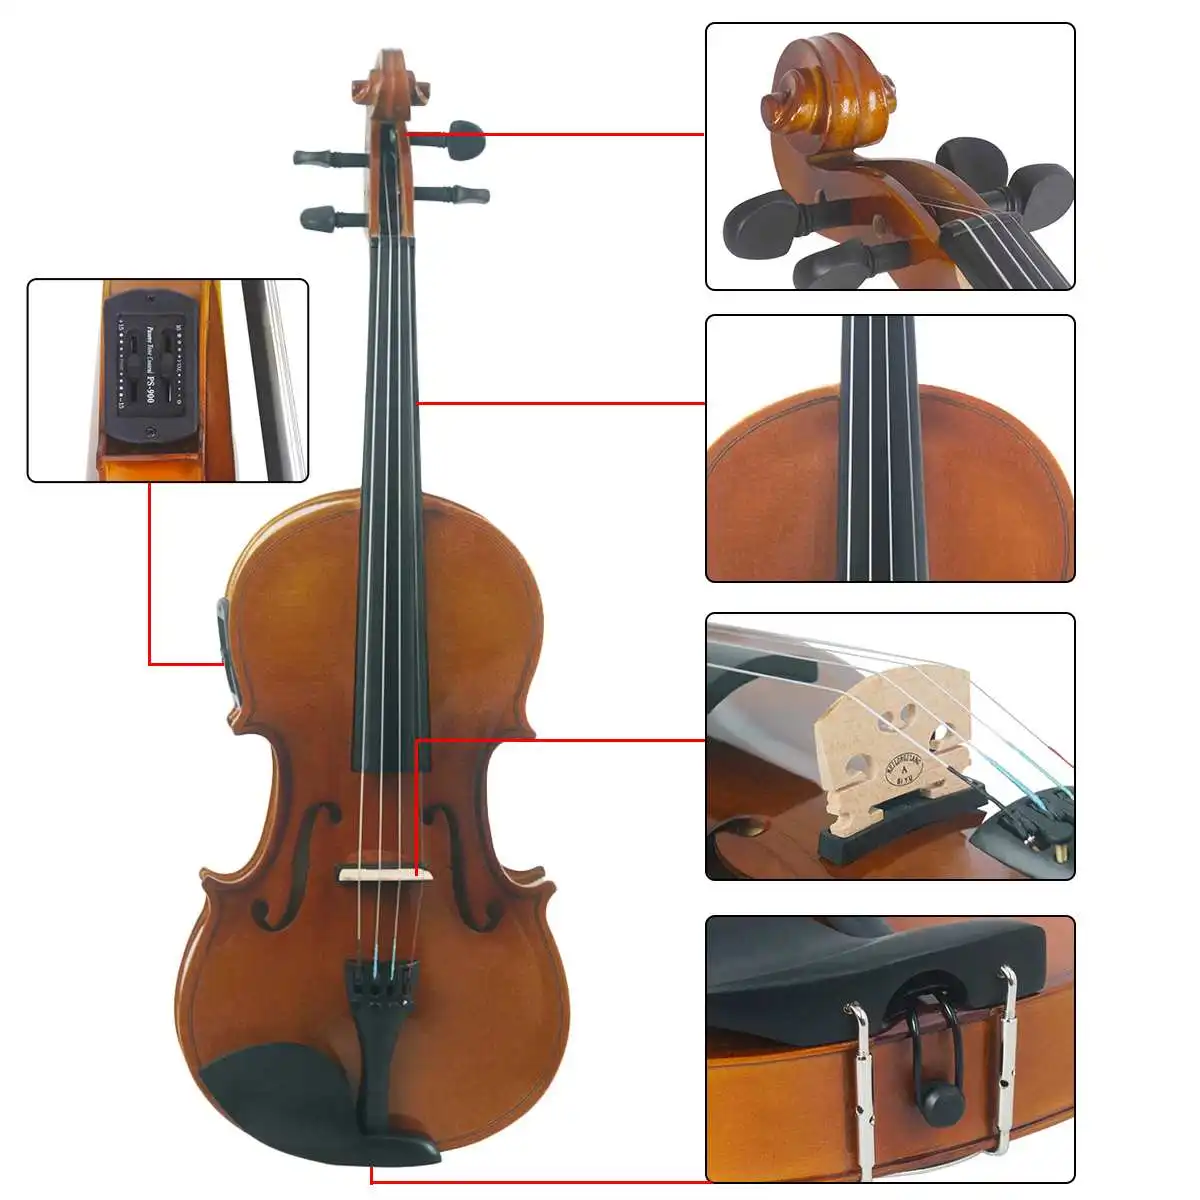 4/4 полноразмерная электро-акустическая скрипка Astonvilla деревянная скрипка с чехол с бантом Набор из цельной кленовой древесины идеально подходит для начинающих игроков